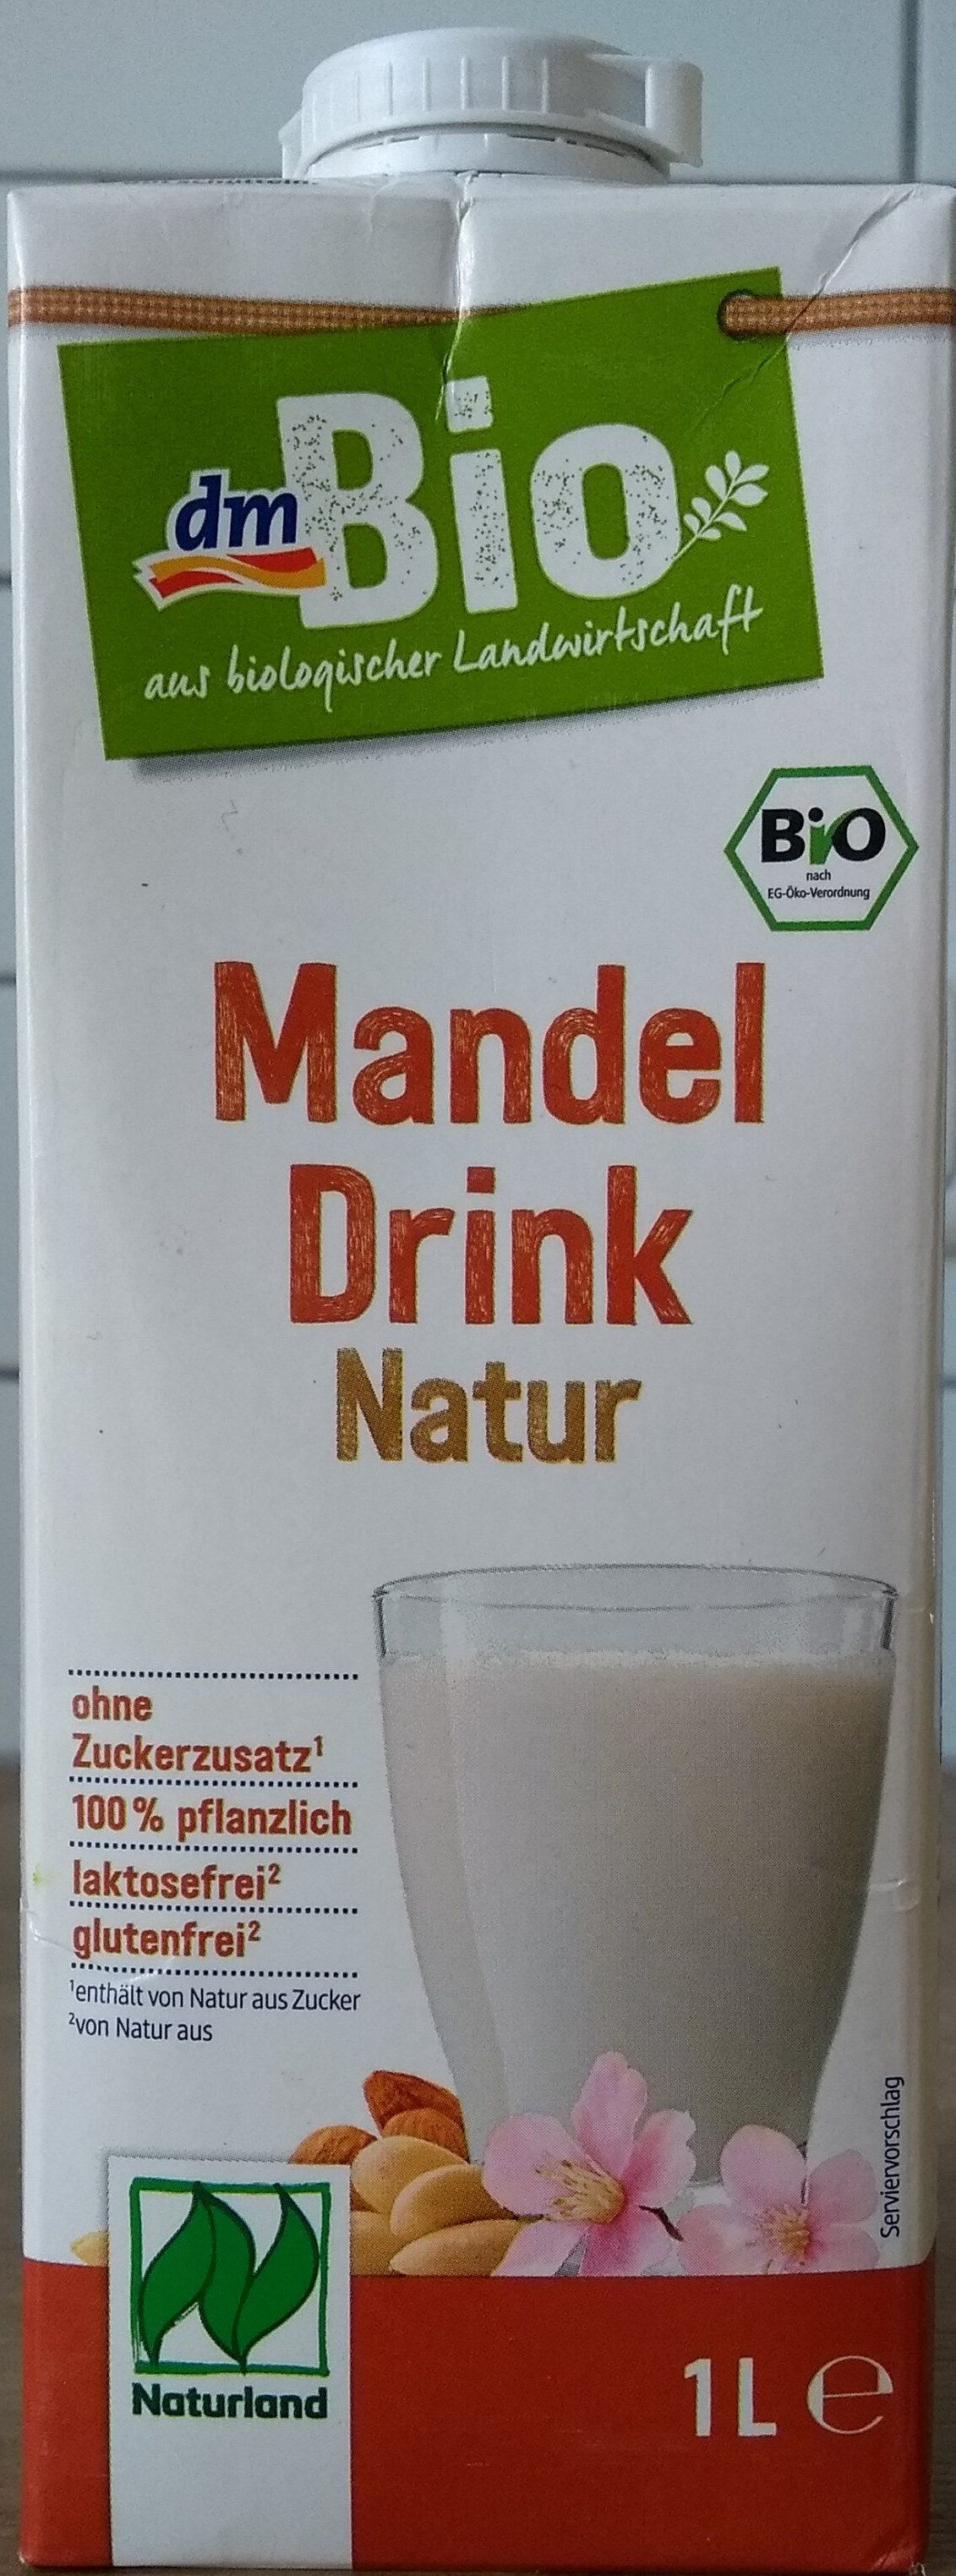 Mandel Drink natur - Produkt